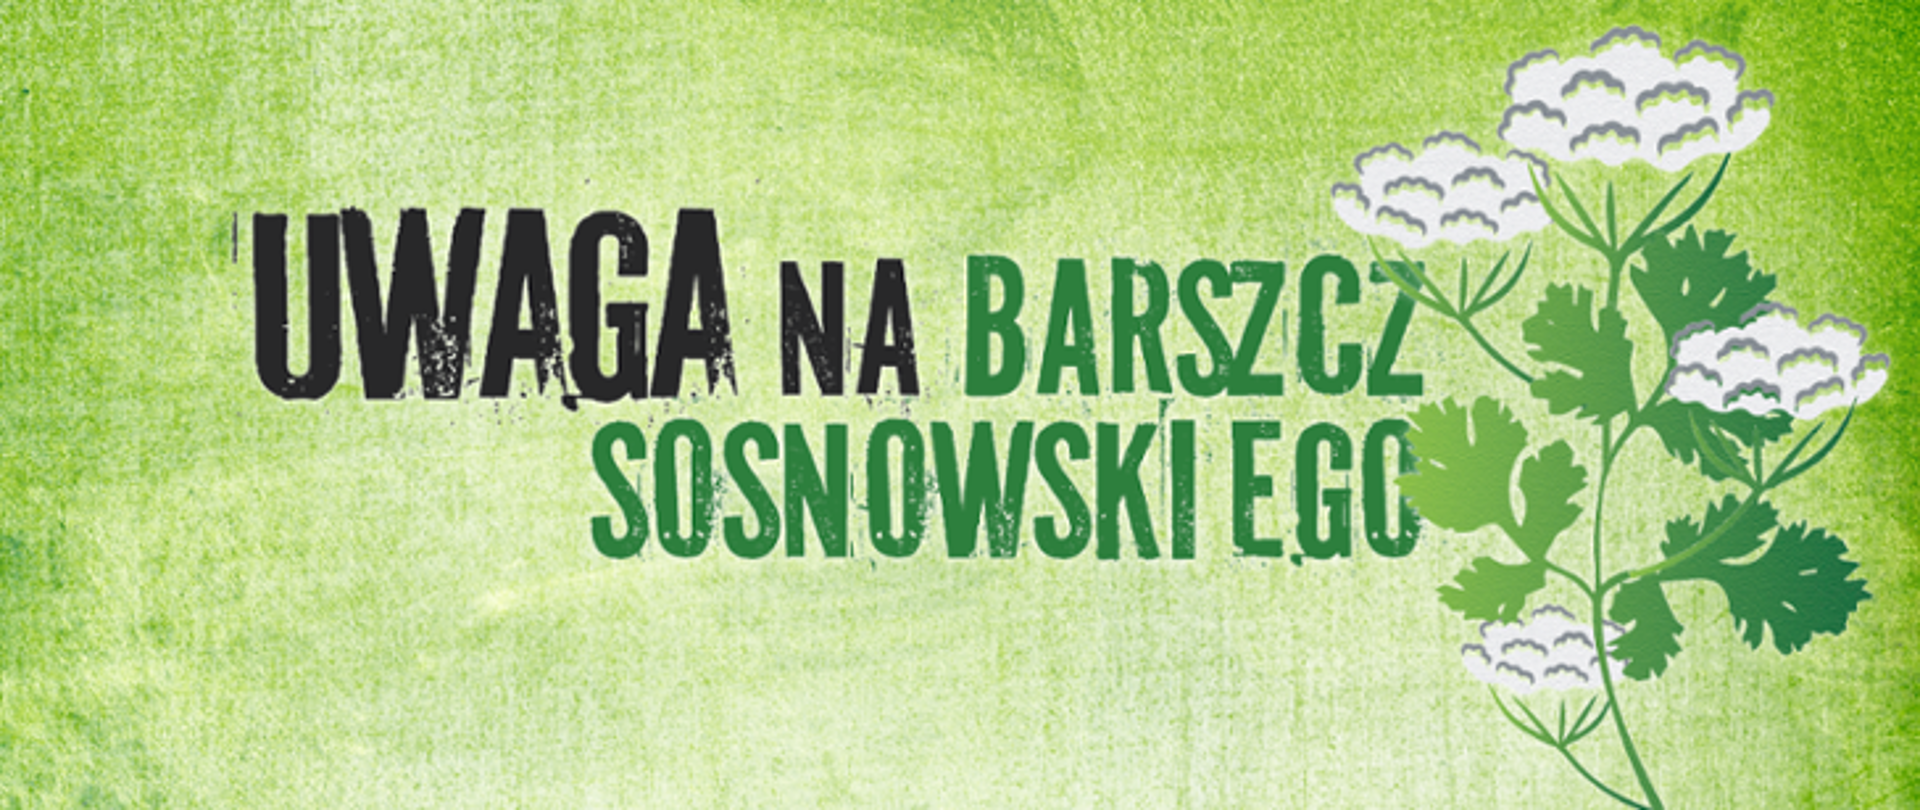 Baner przedstawia rysunek rośliny i napis: "Uwaga na barszcz Sosnowskiego"